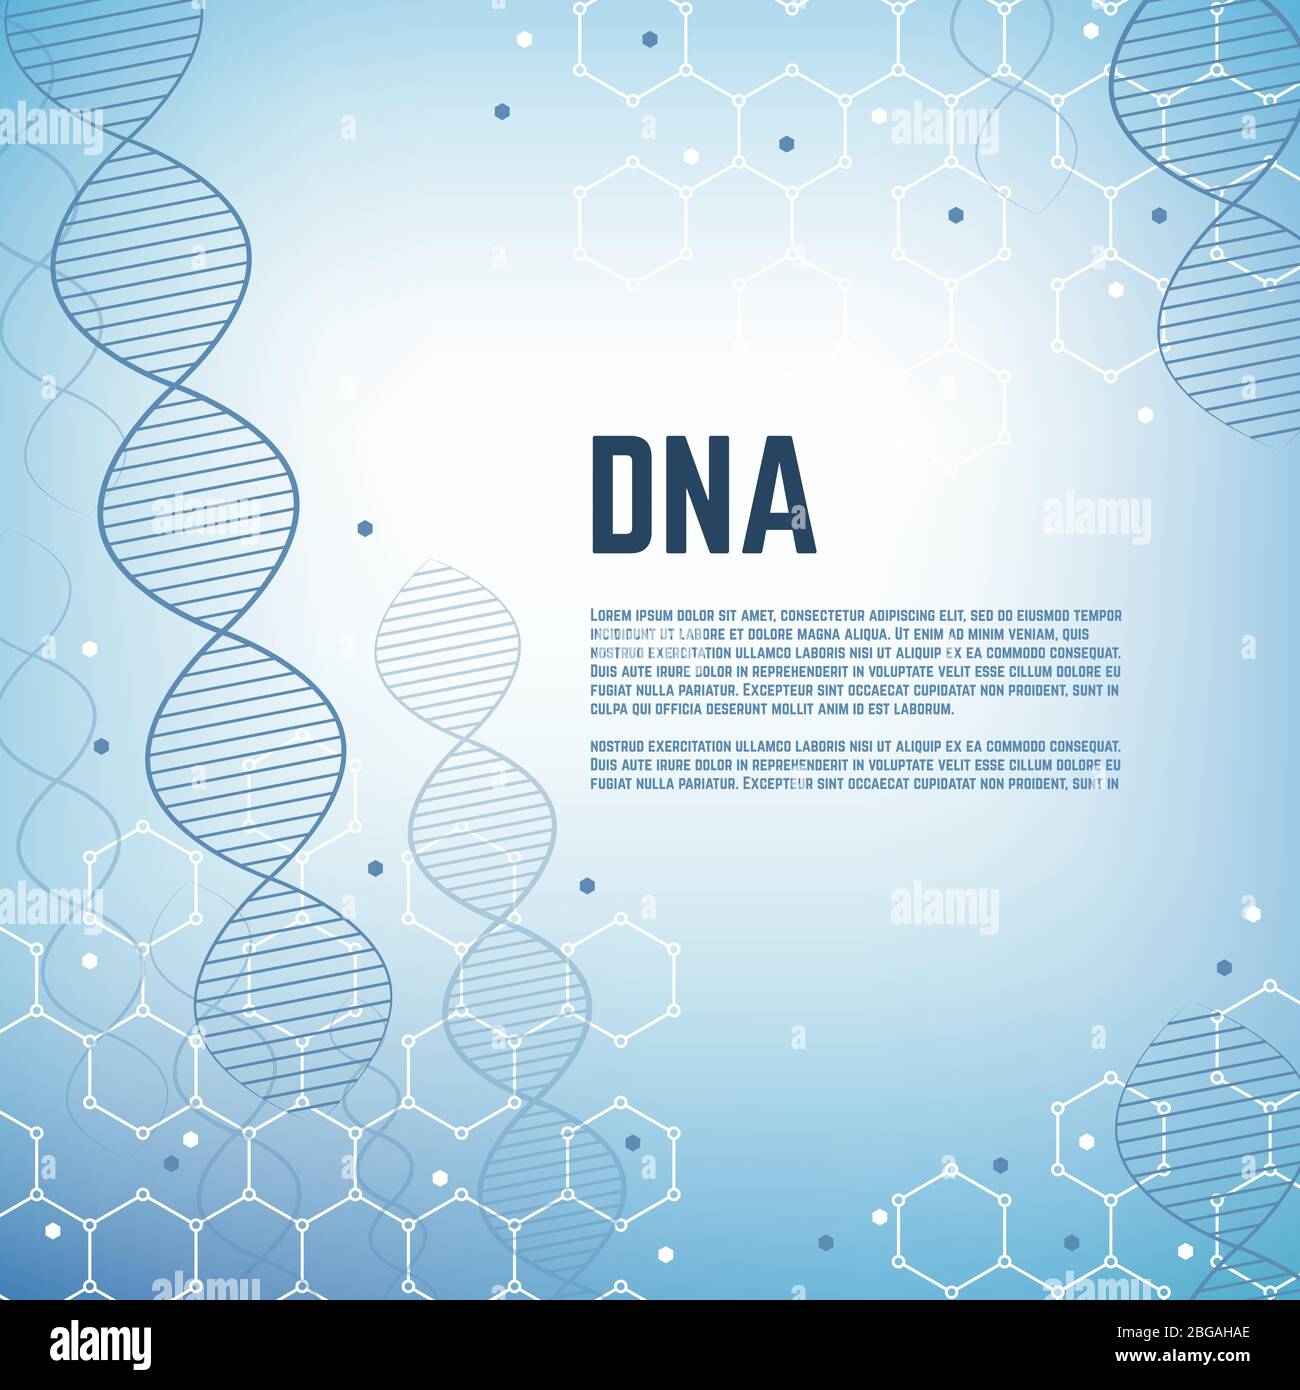 Abstrakter genetischer wissenschaftlicher Vektor Hintergrund mit dna-Modell des menschlichen Chromosomenmoleküls. DNA-Modell Banner, Zelle und Chromosom molekulare Darstellung Stock Vektor